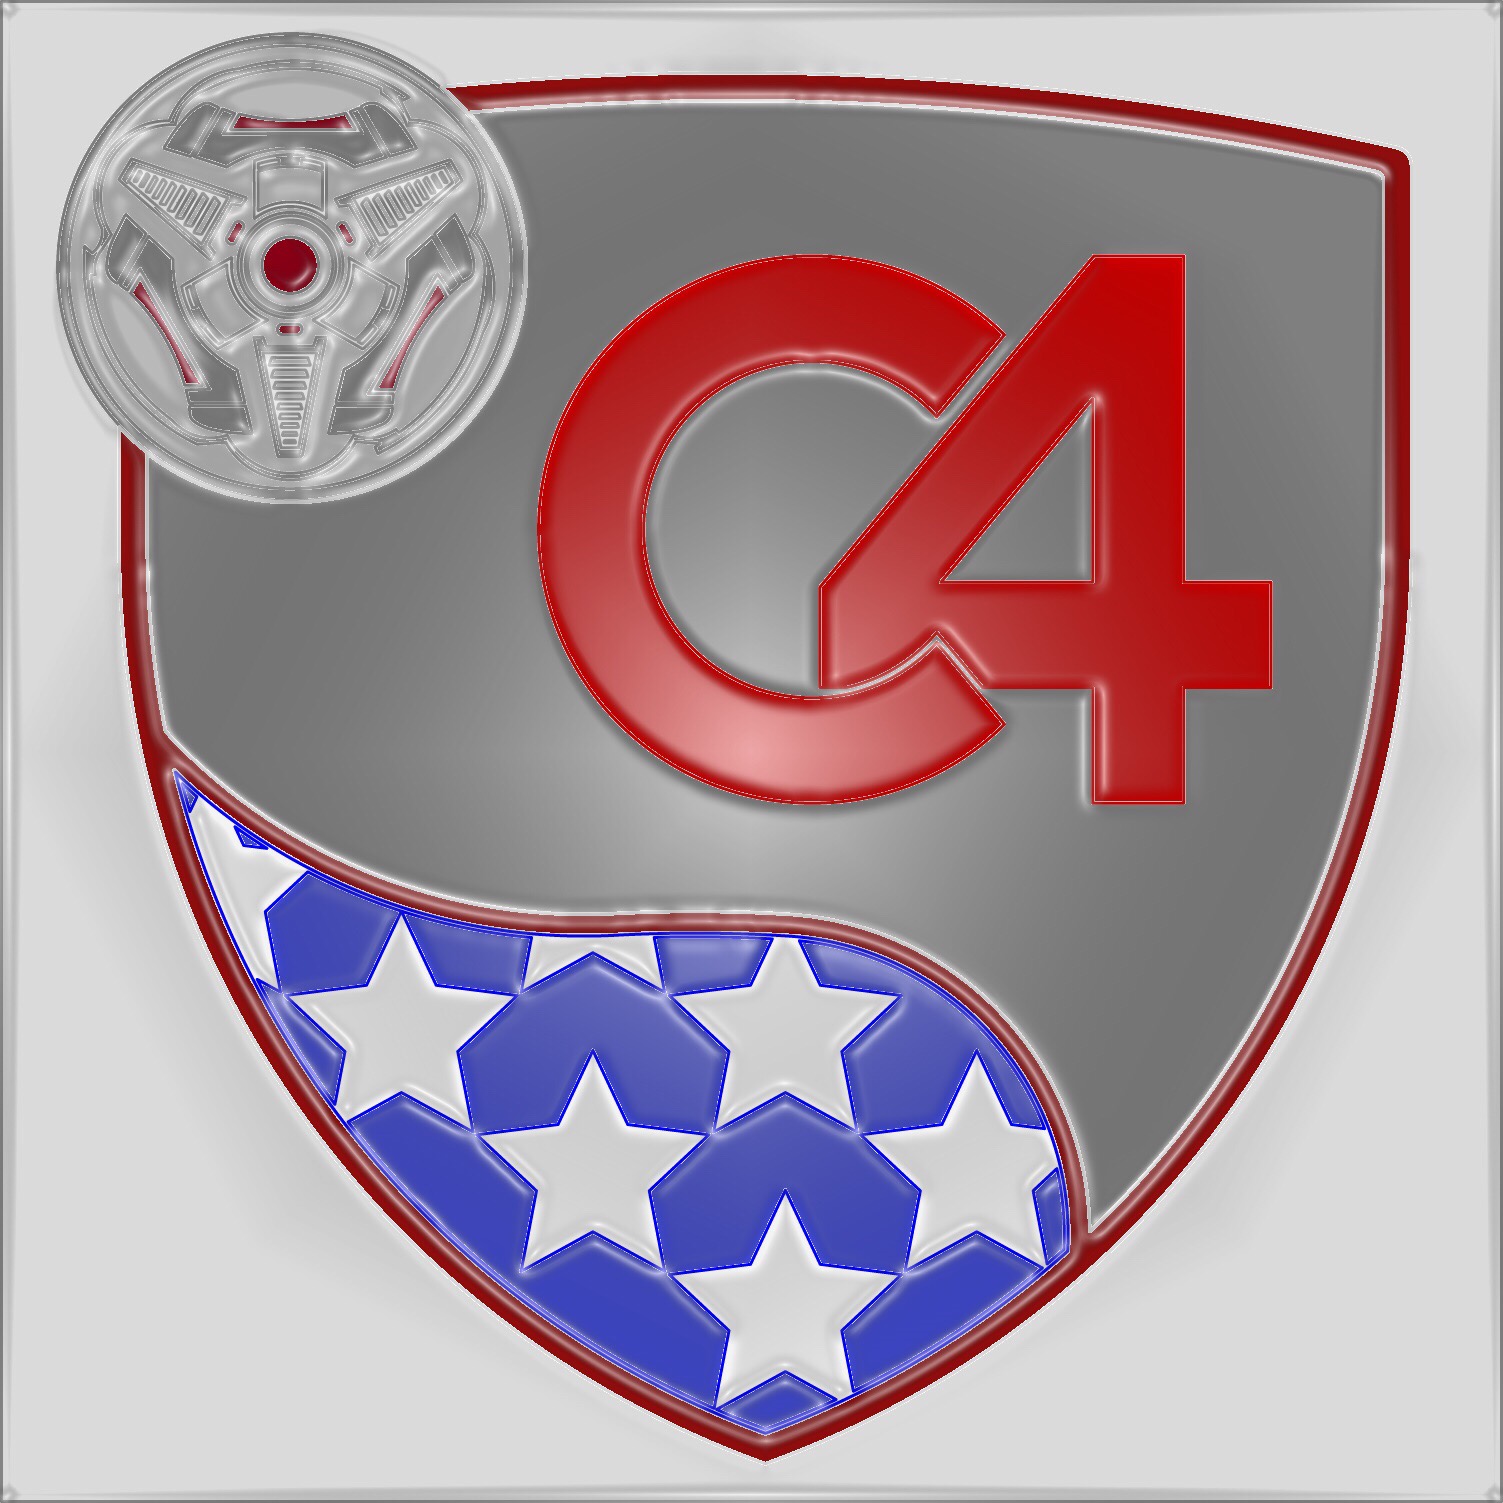 C4 | CadenY